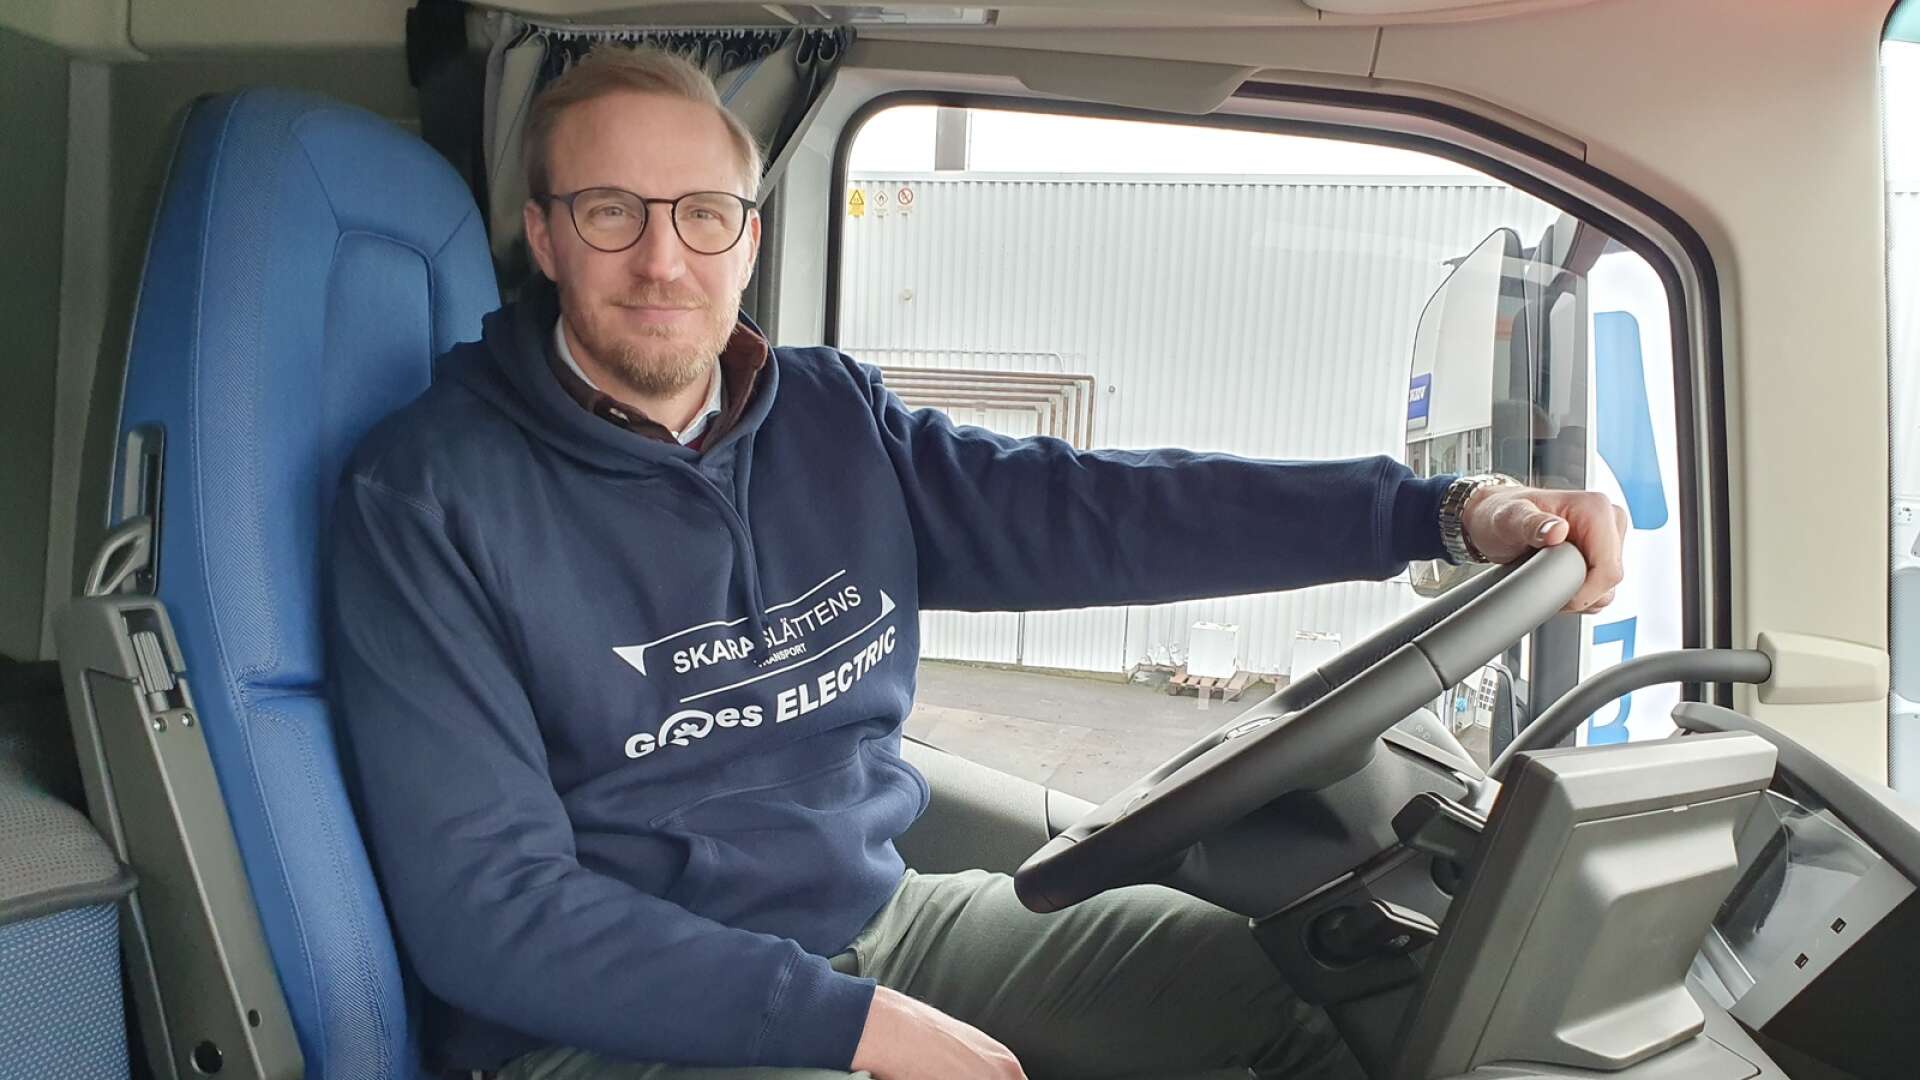 Skaraslättens Transport ABs Johan Söderström köpte in ellasbilar för över 12 miljoner kronor till företaget. Han är dock ingen chaufför men lite avundsjuk på de som får en mycket bättre arbetsmiljö.